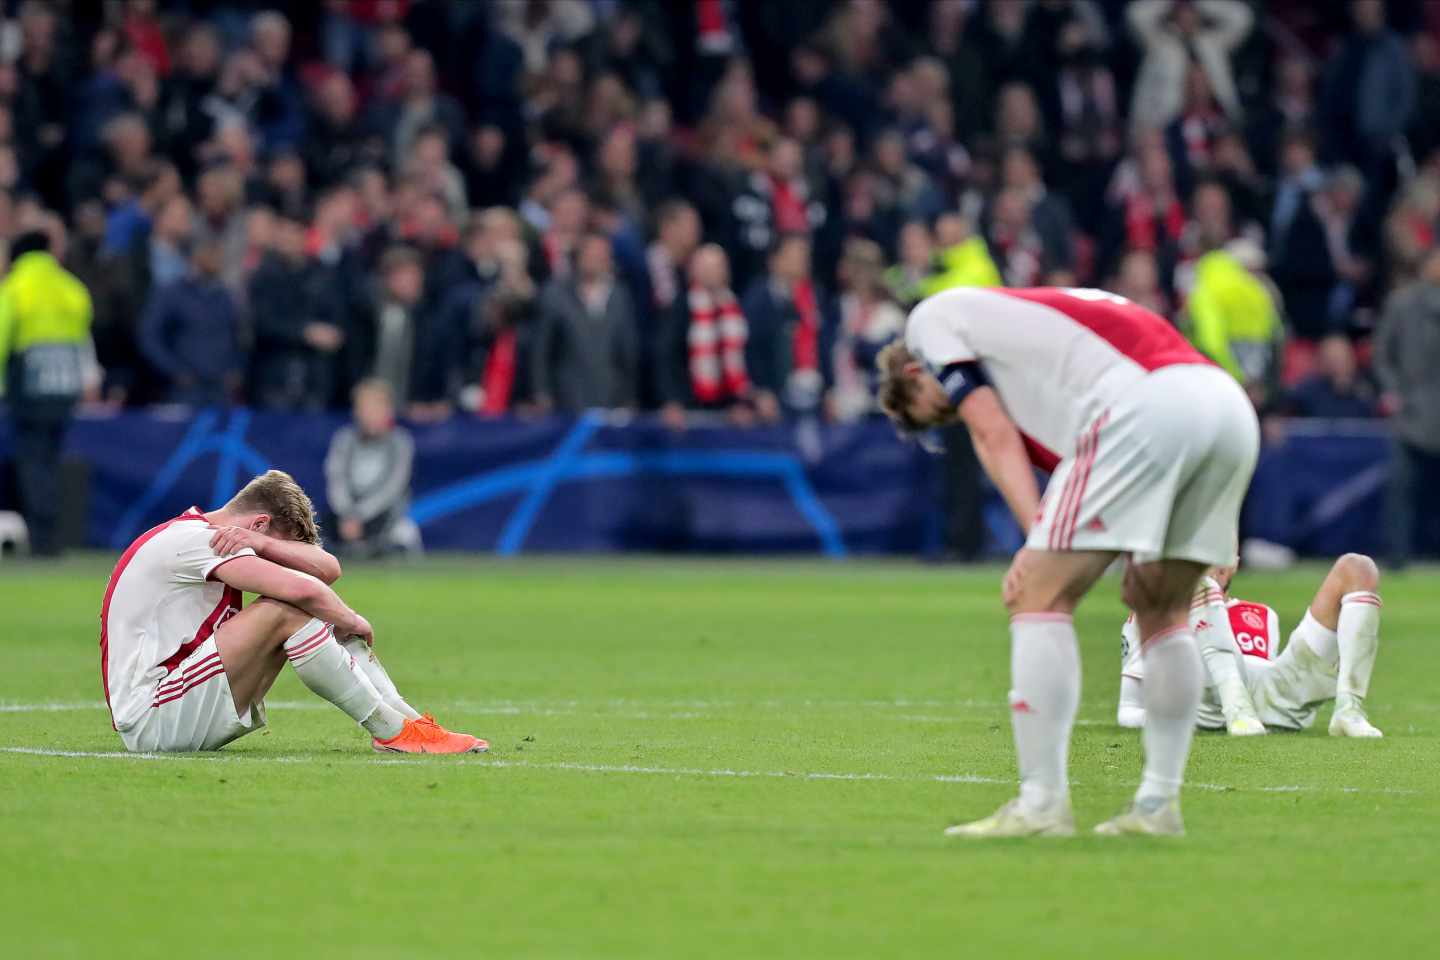 La debacle del Ajax se extiende al mercado: sufre la mayor caída en bolsa de su historia.